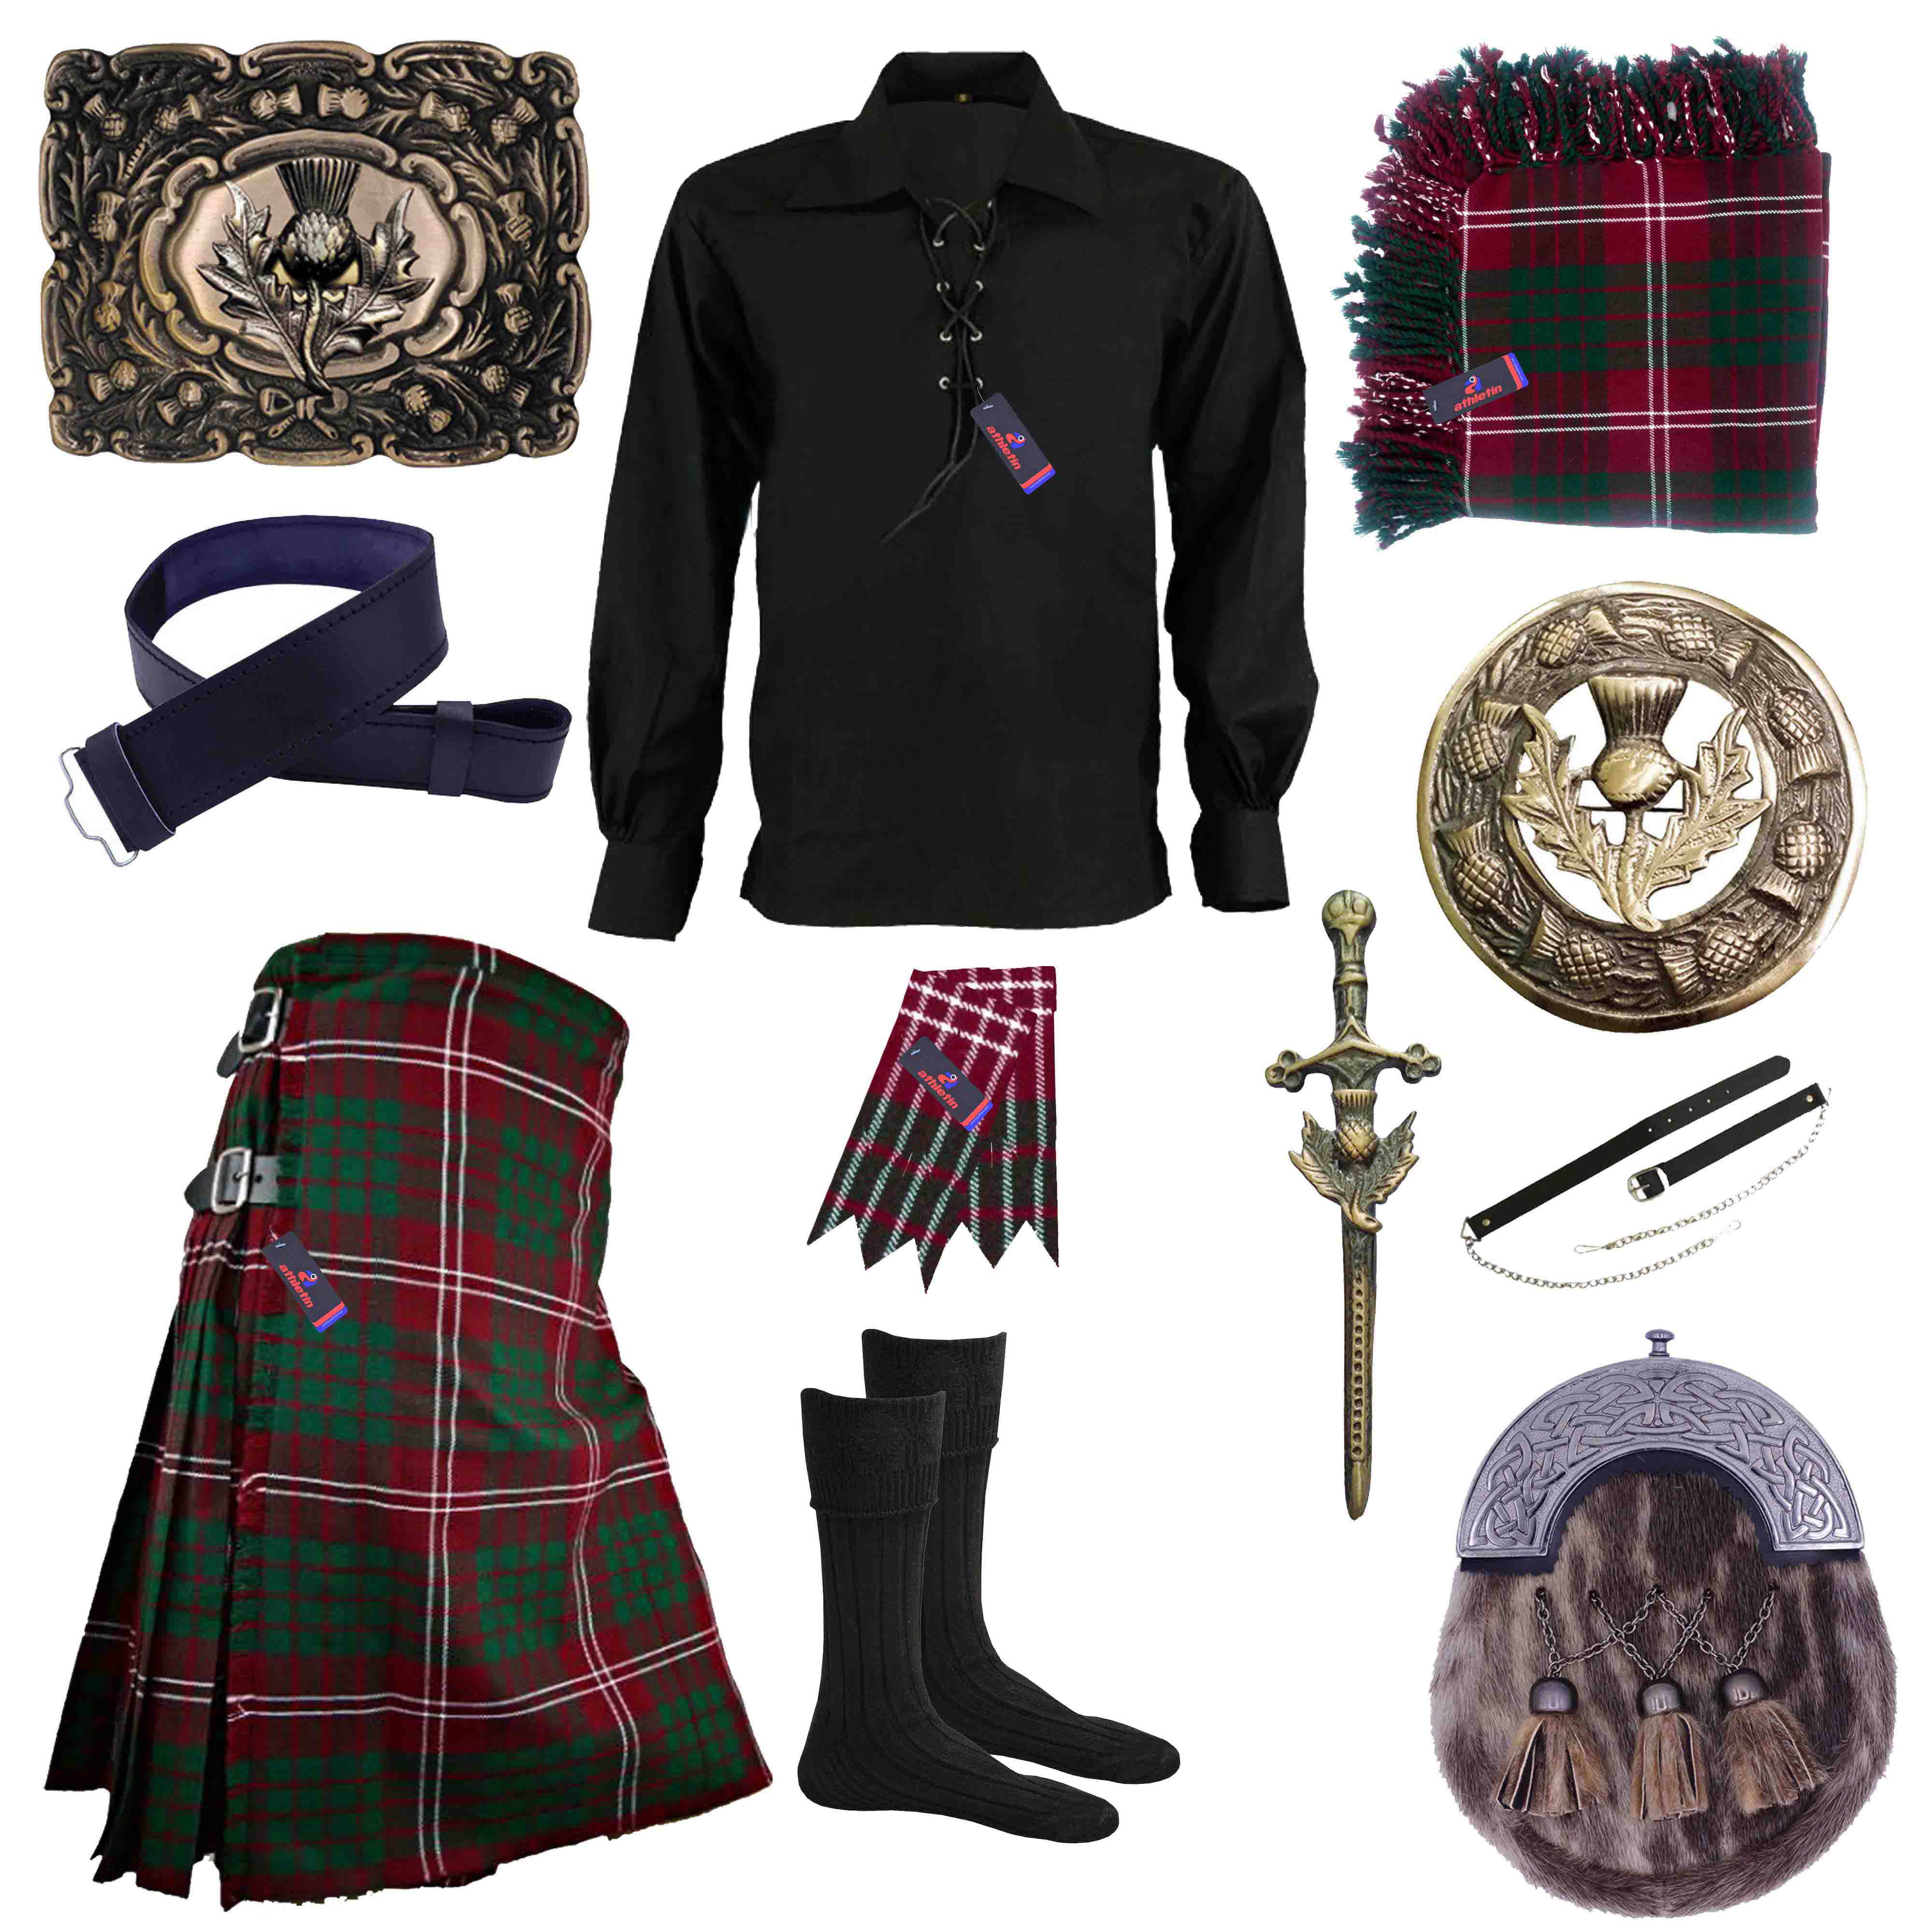 Buckle Belt Plain Black Tartan Traditional Scottish Men/'s Kilt Outfit Pin Spo